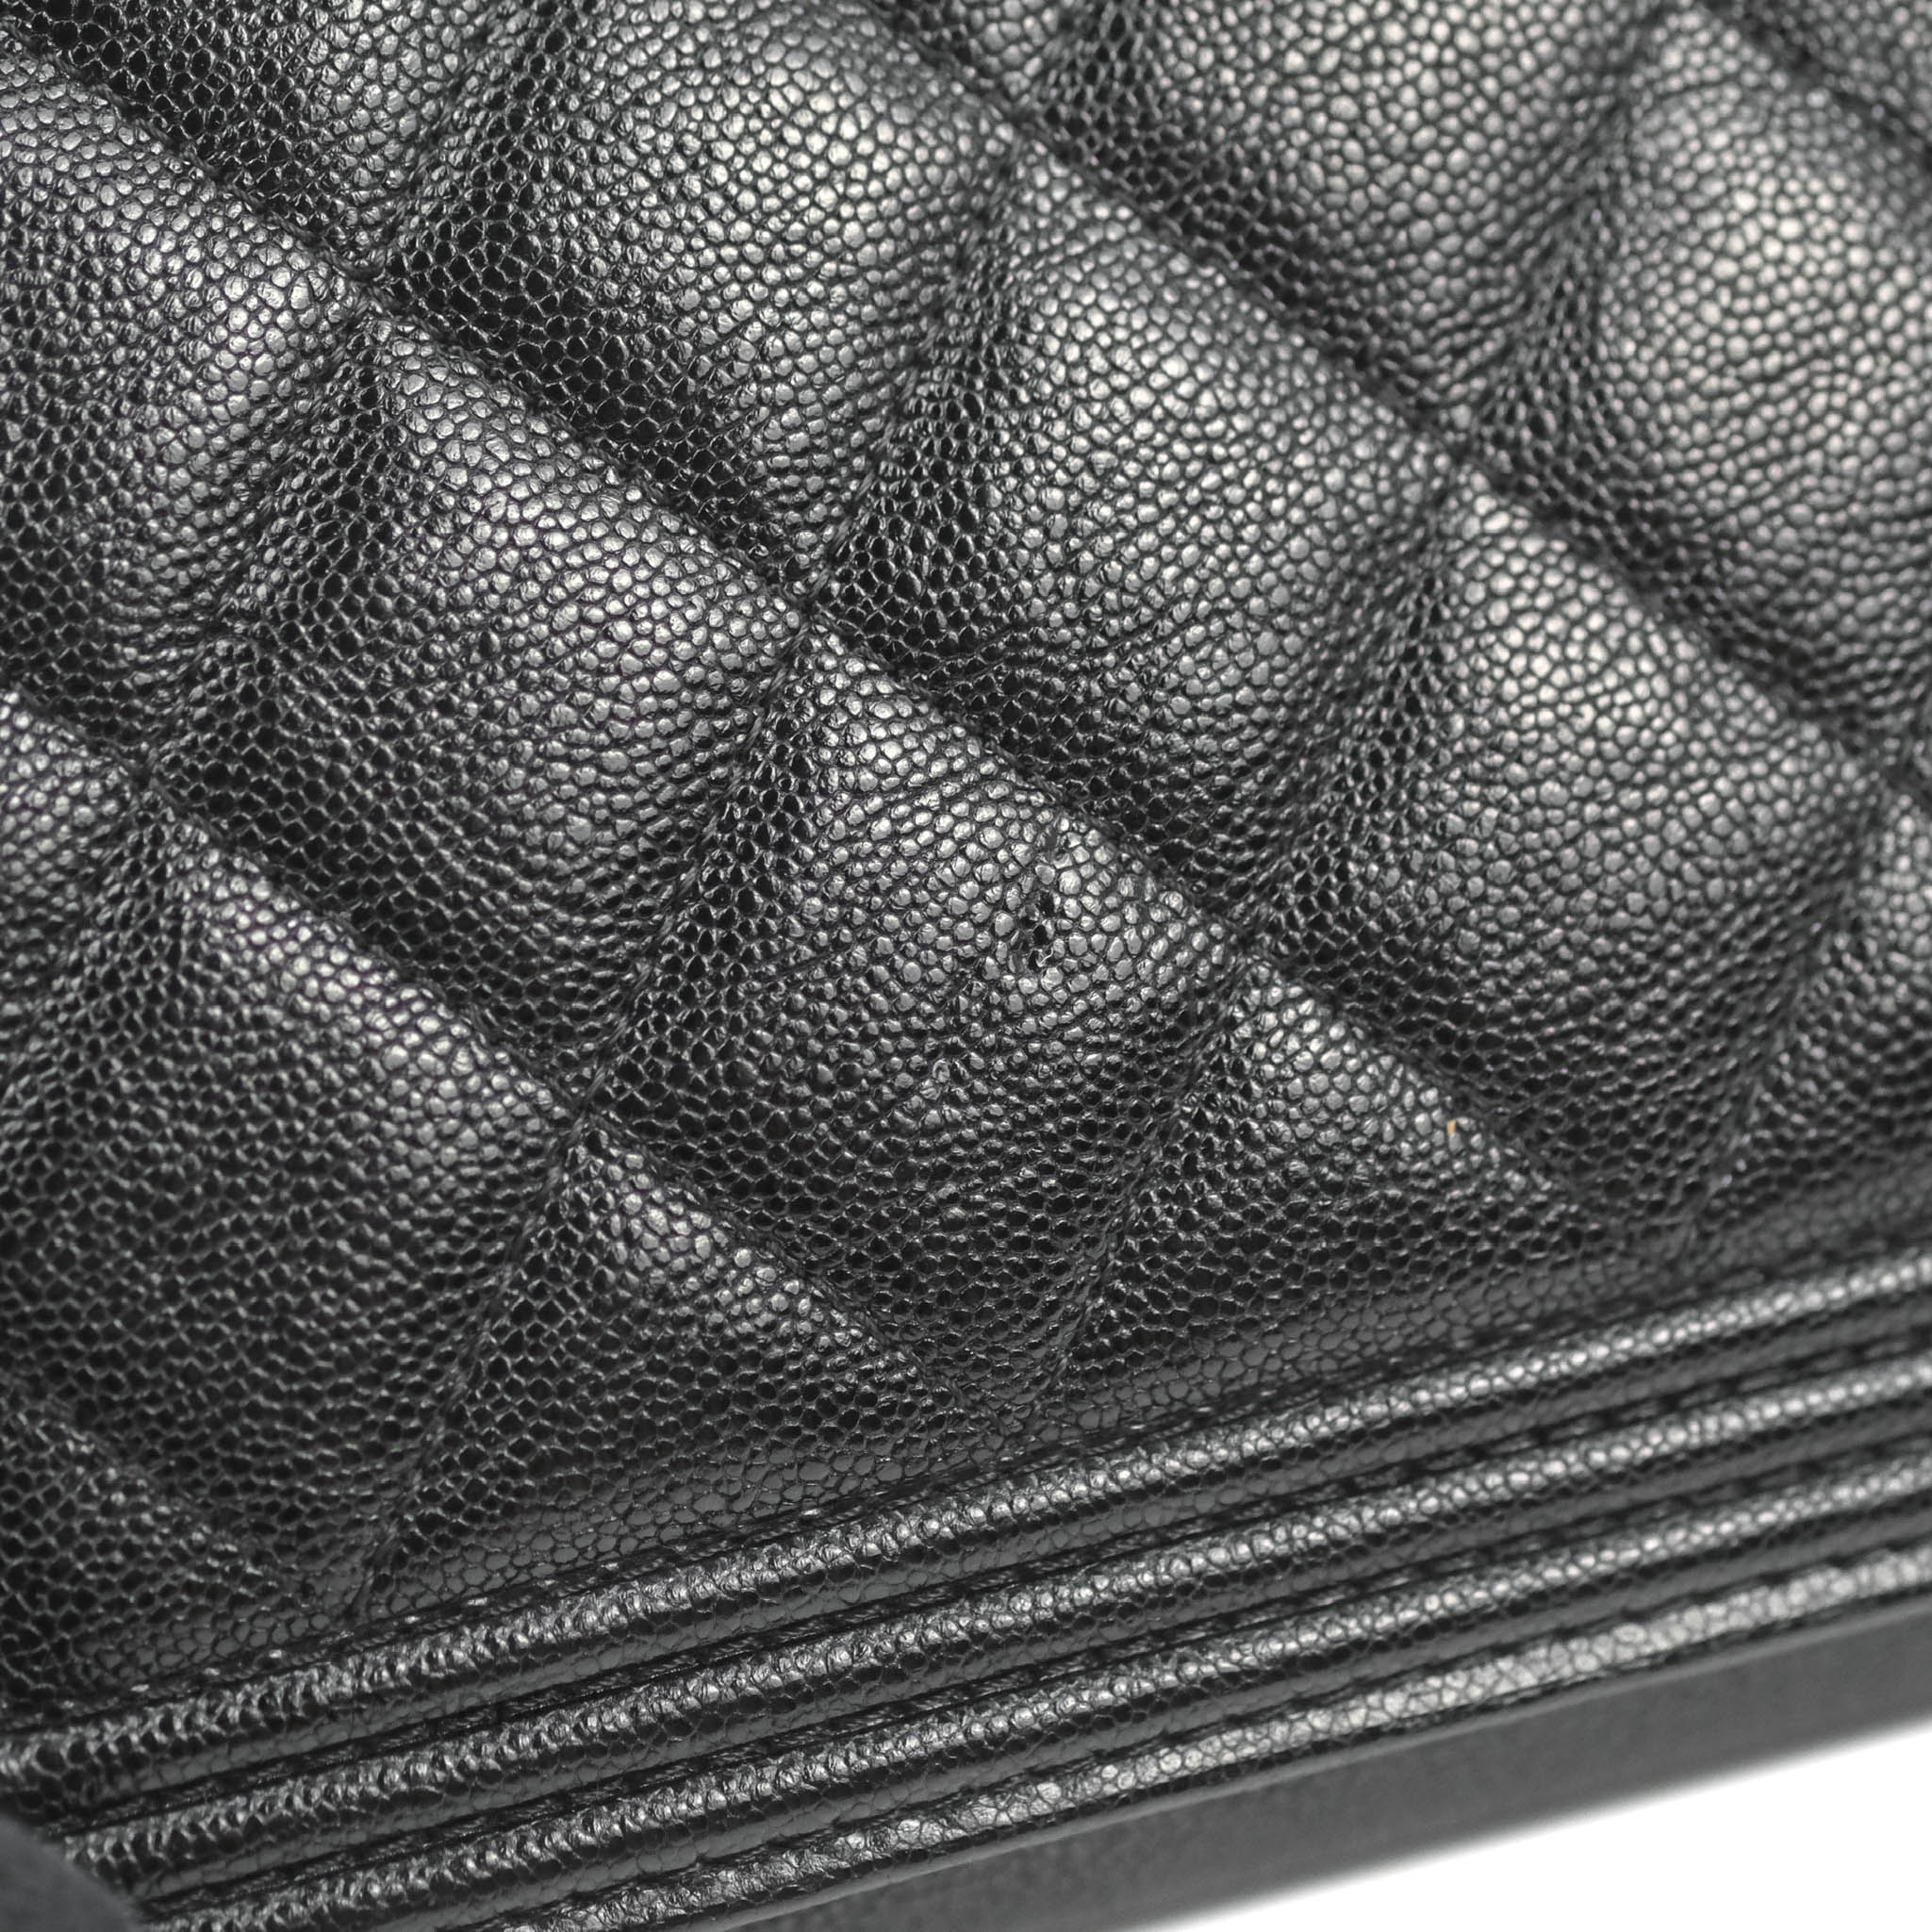 Chanel Boy(WOC) Caviar Wallet On Chain –